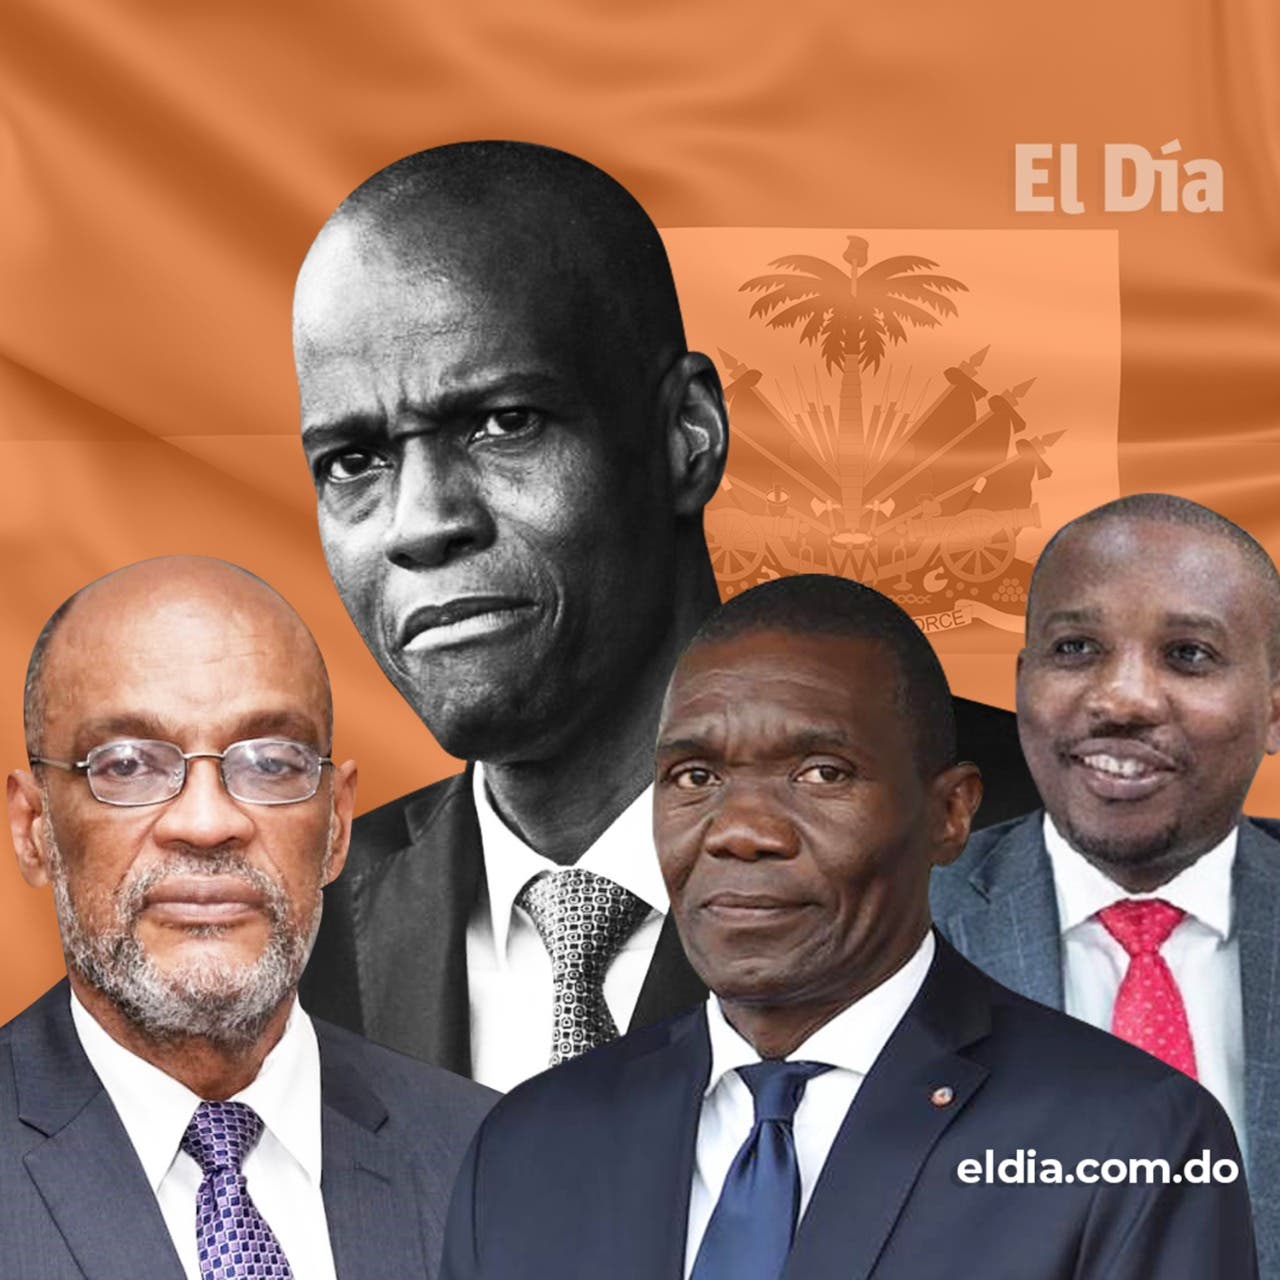 ¿Quiénes son los hombres que se disputan el poder en Haití?